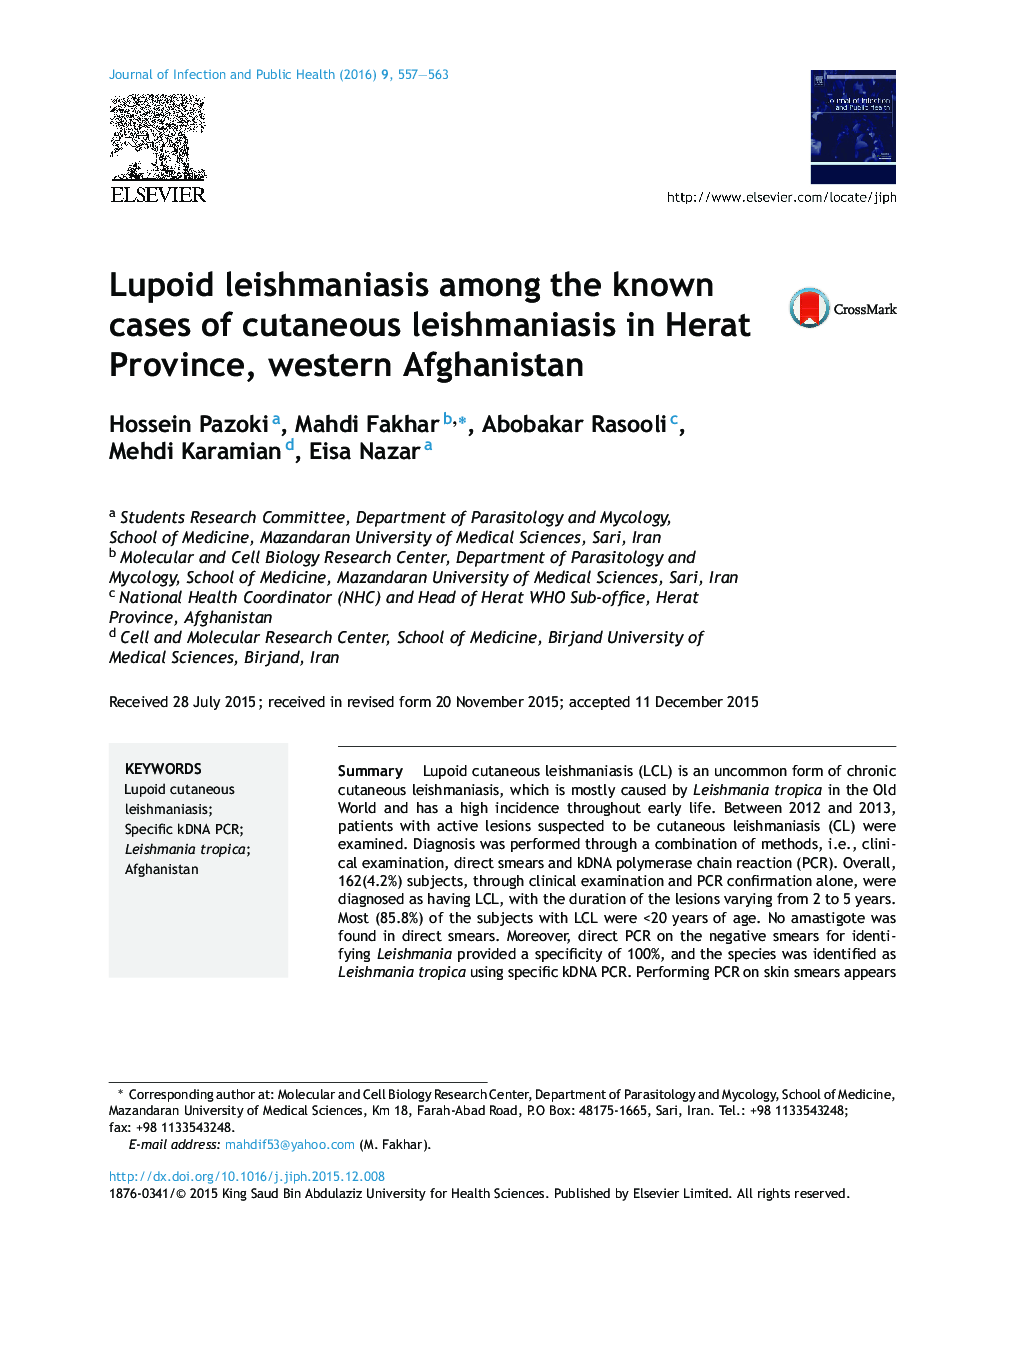 لیشمانیوز لوپوید در میان موارد شناخته شده لیشمانیوز جلدی در استان هرات در غرب افغانستان